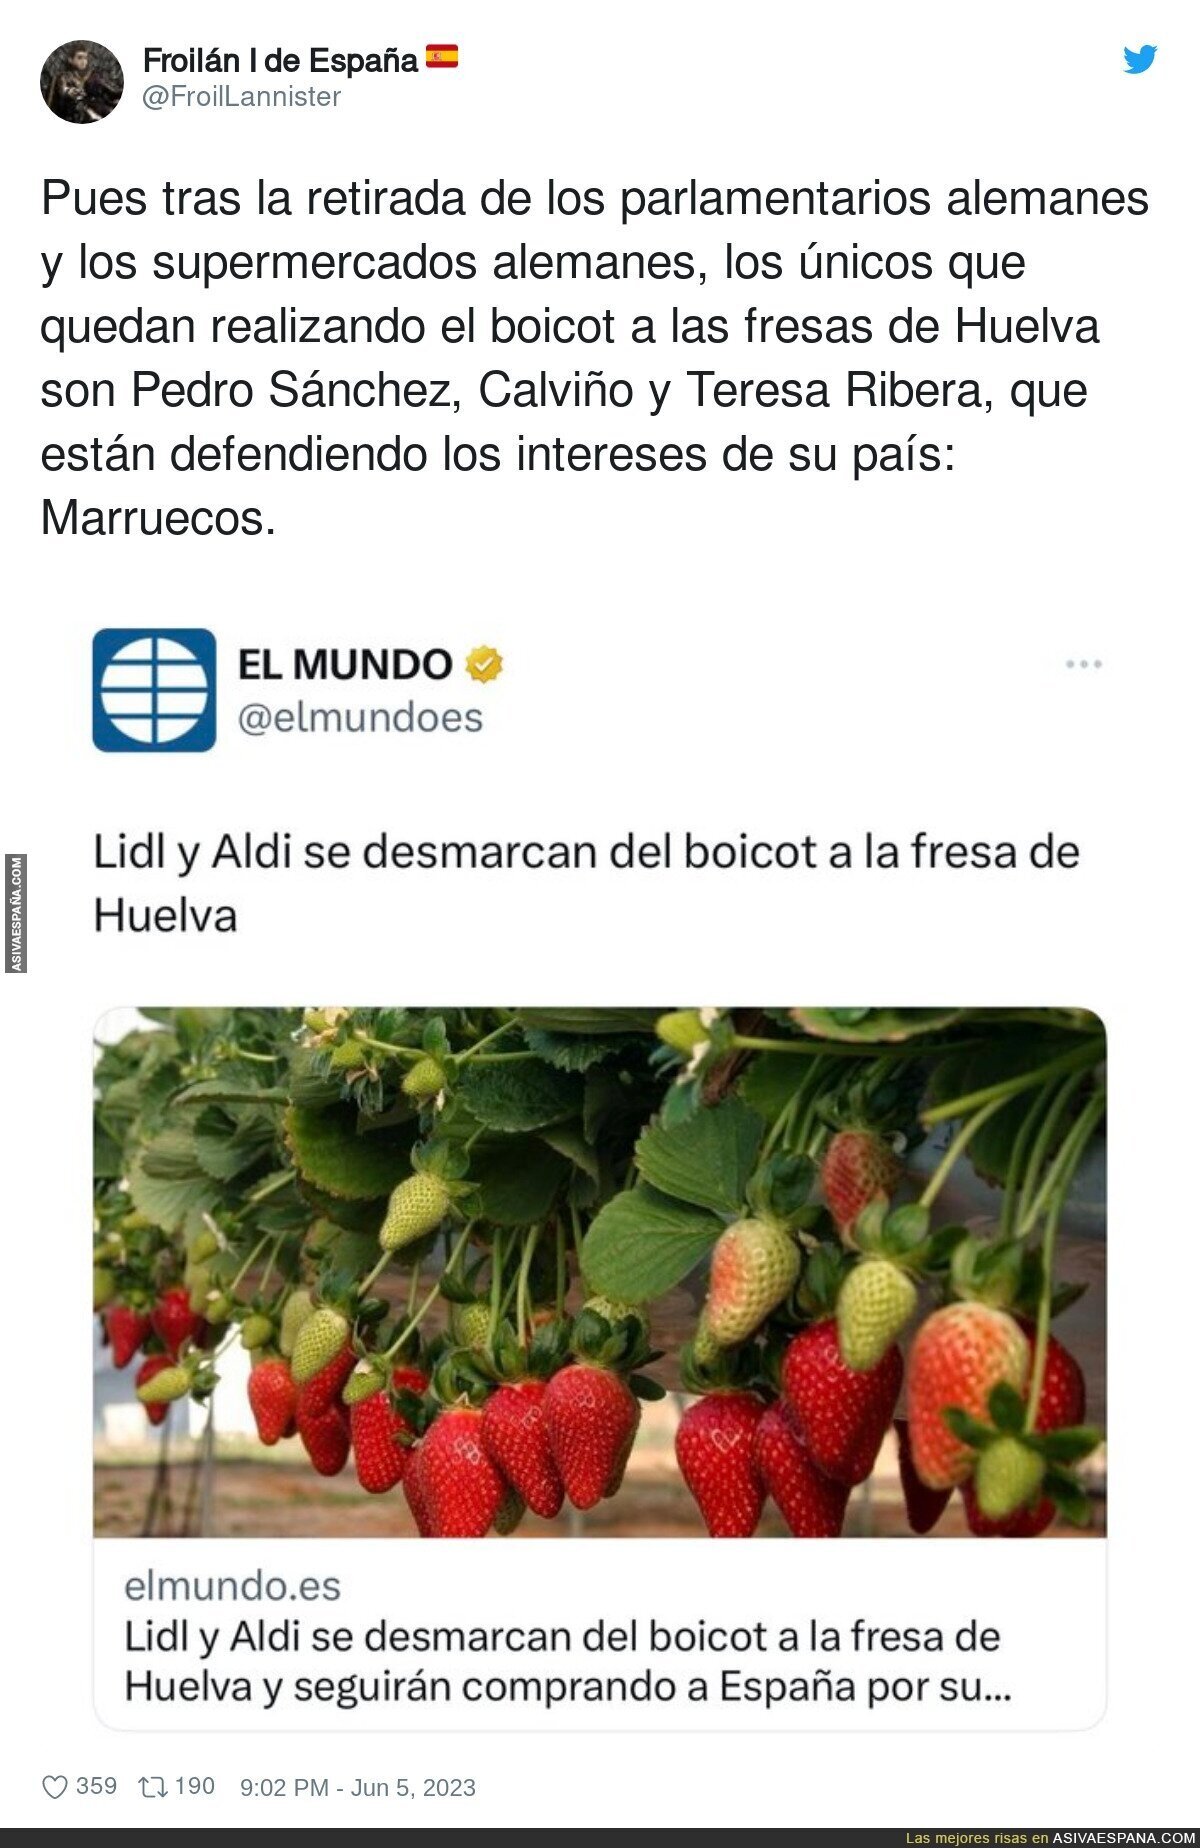 Pedro Sánchez contra las fresas